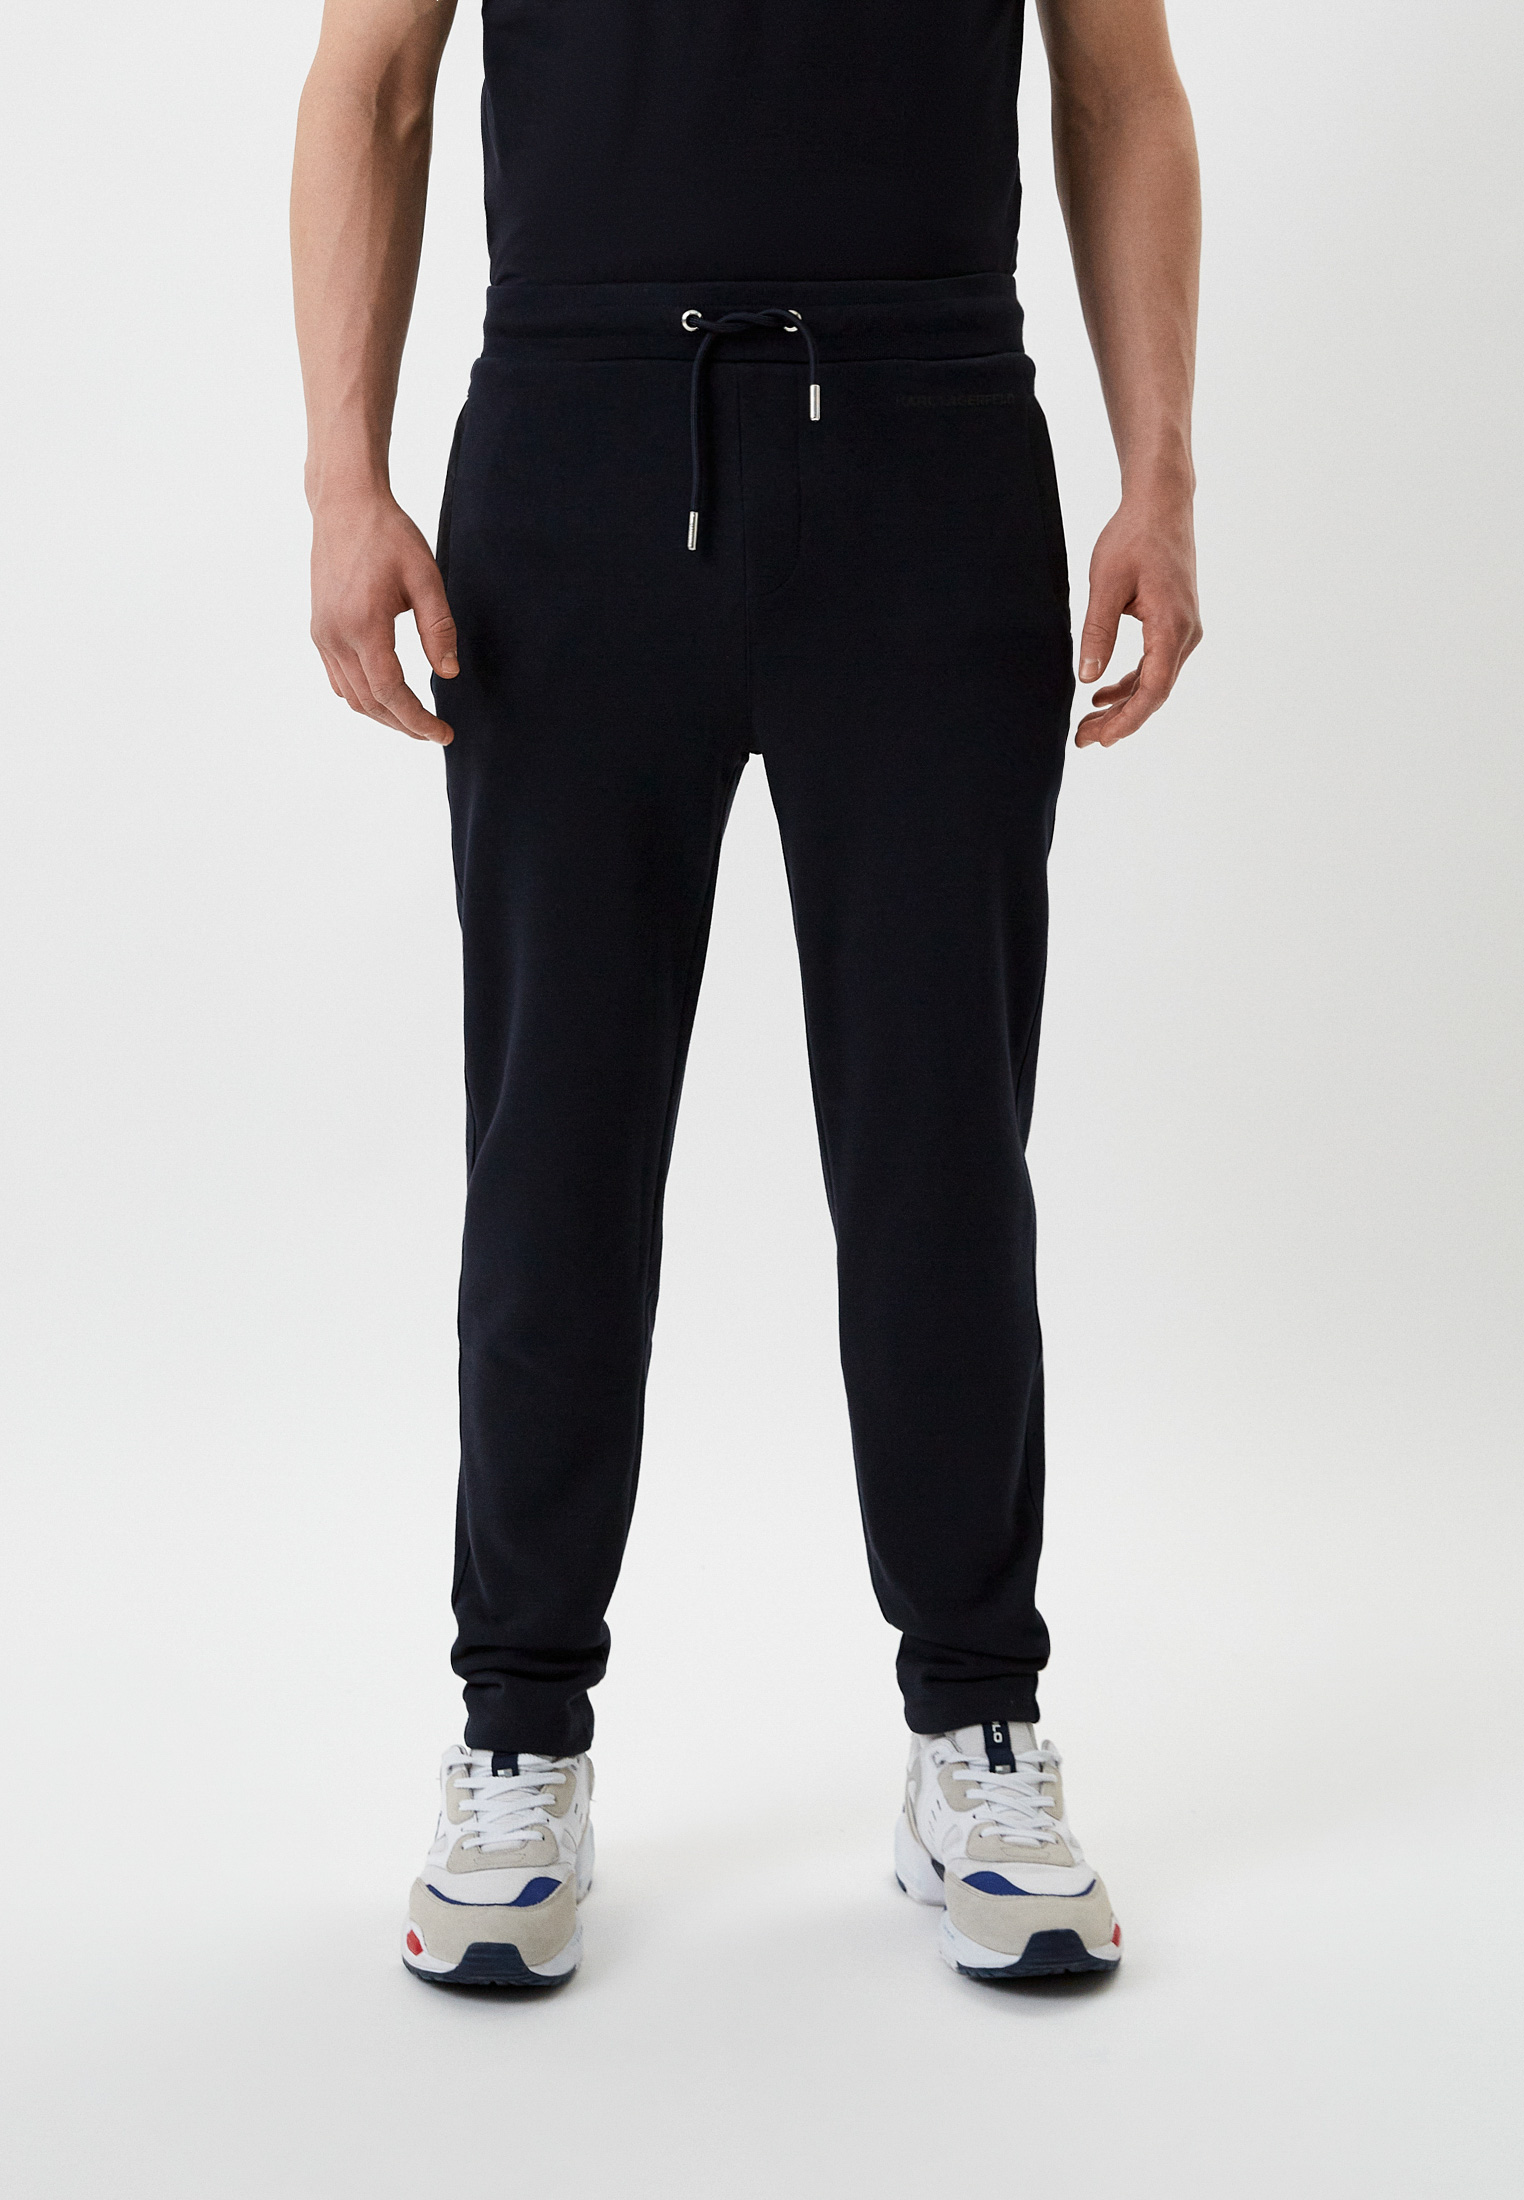 Мужские спортивные брюки Karl Lagerfeld (Карл Лагерфельд) 521900-705088: изображение 1